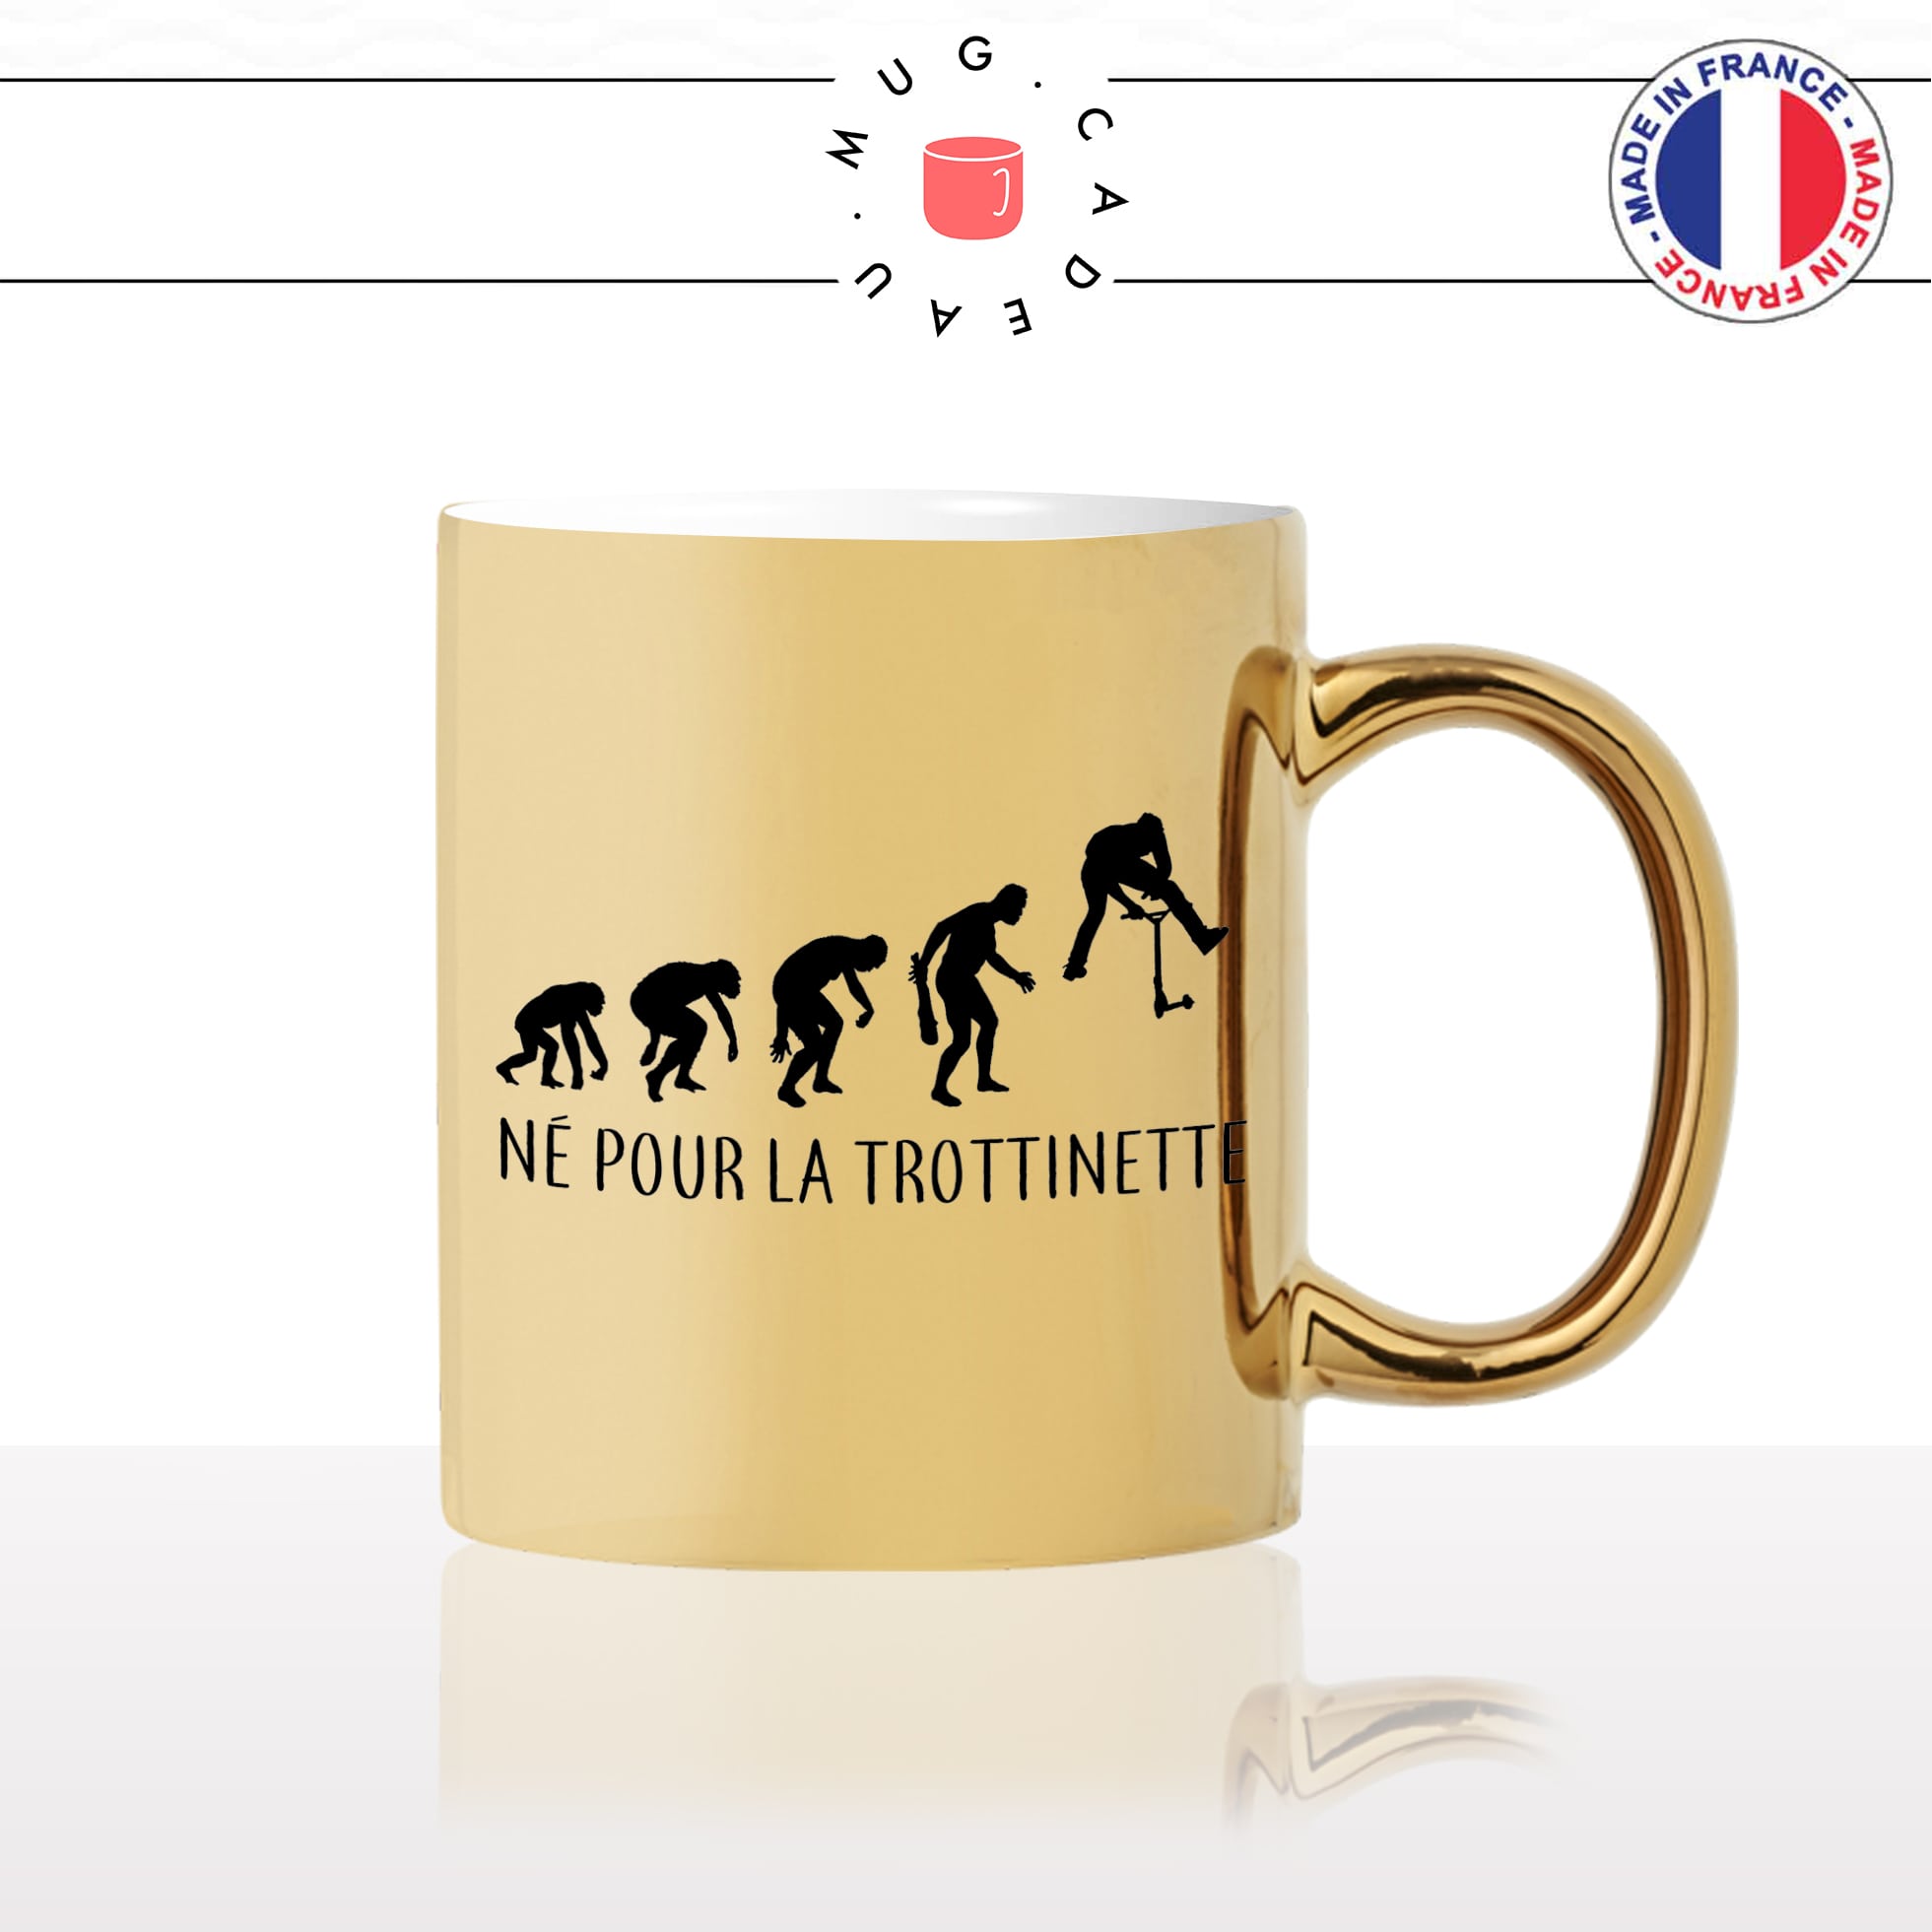 mug-tasse-or-doré-gold-né-pour-la-trottinette-sport-ado-homme-figure-compet-evolution-humaine-cool-idée-cadeau-fun-café-thé-personnalisé2-min